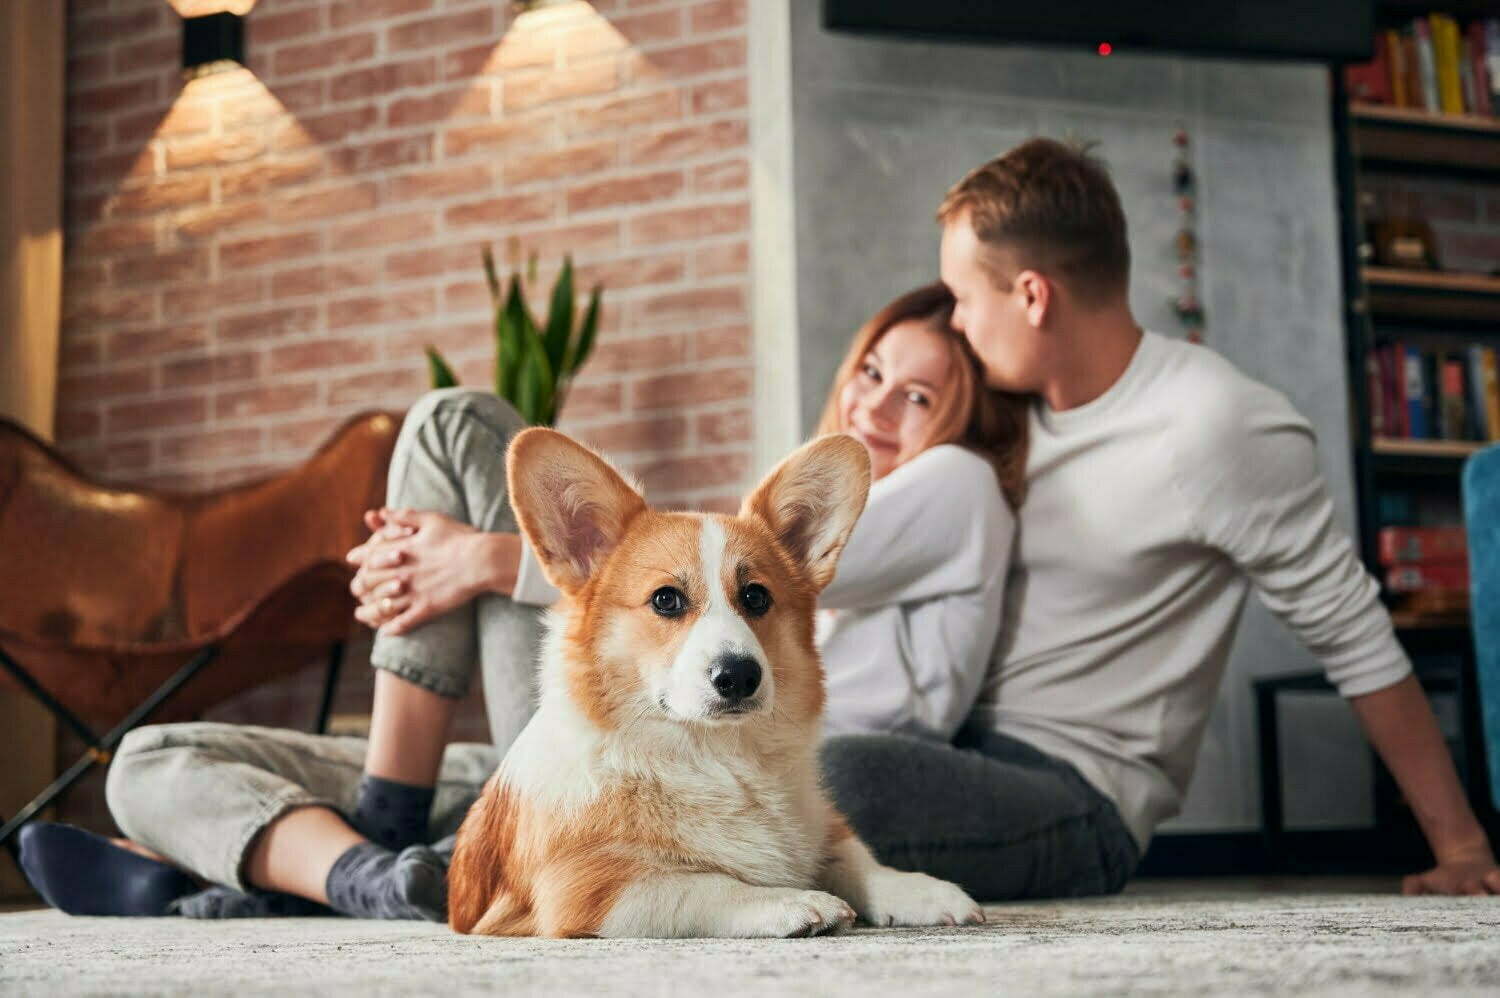 Wohnen mit Hund Worauf sollten Sie bei der Einrichtung achten - Wohntrends Magazin